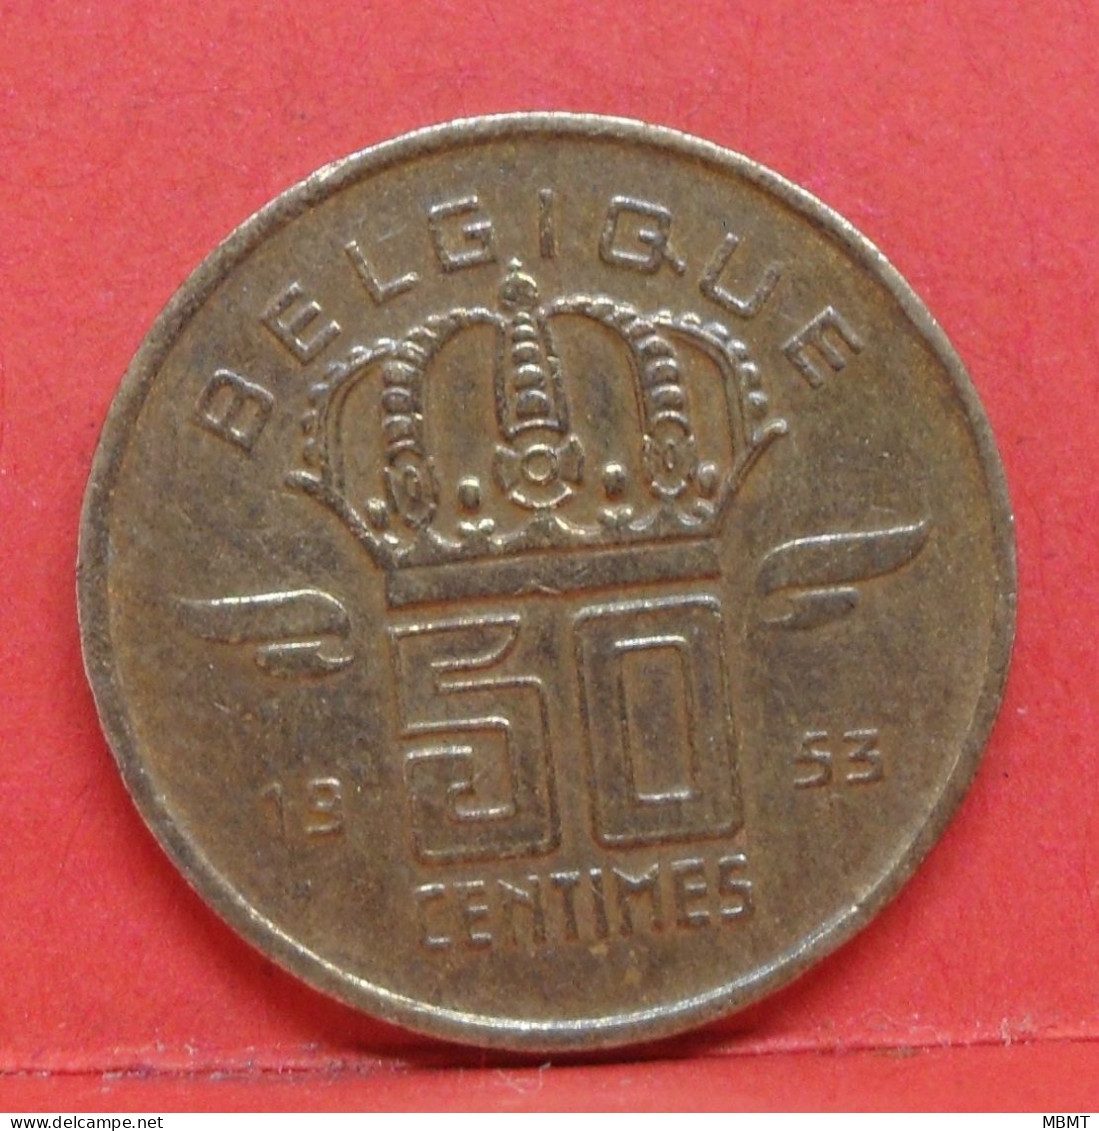 50 Centimes 1953 - SUP - Pièce Monnaie Belgique - Article N°1703 - 50 Cents